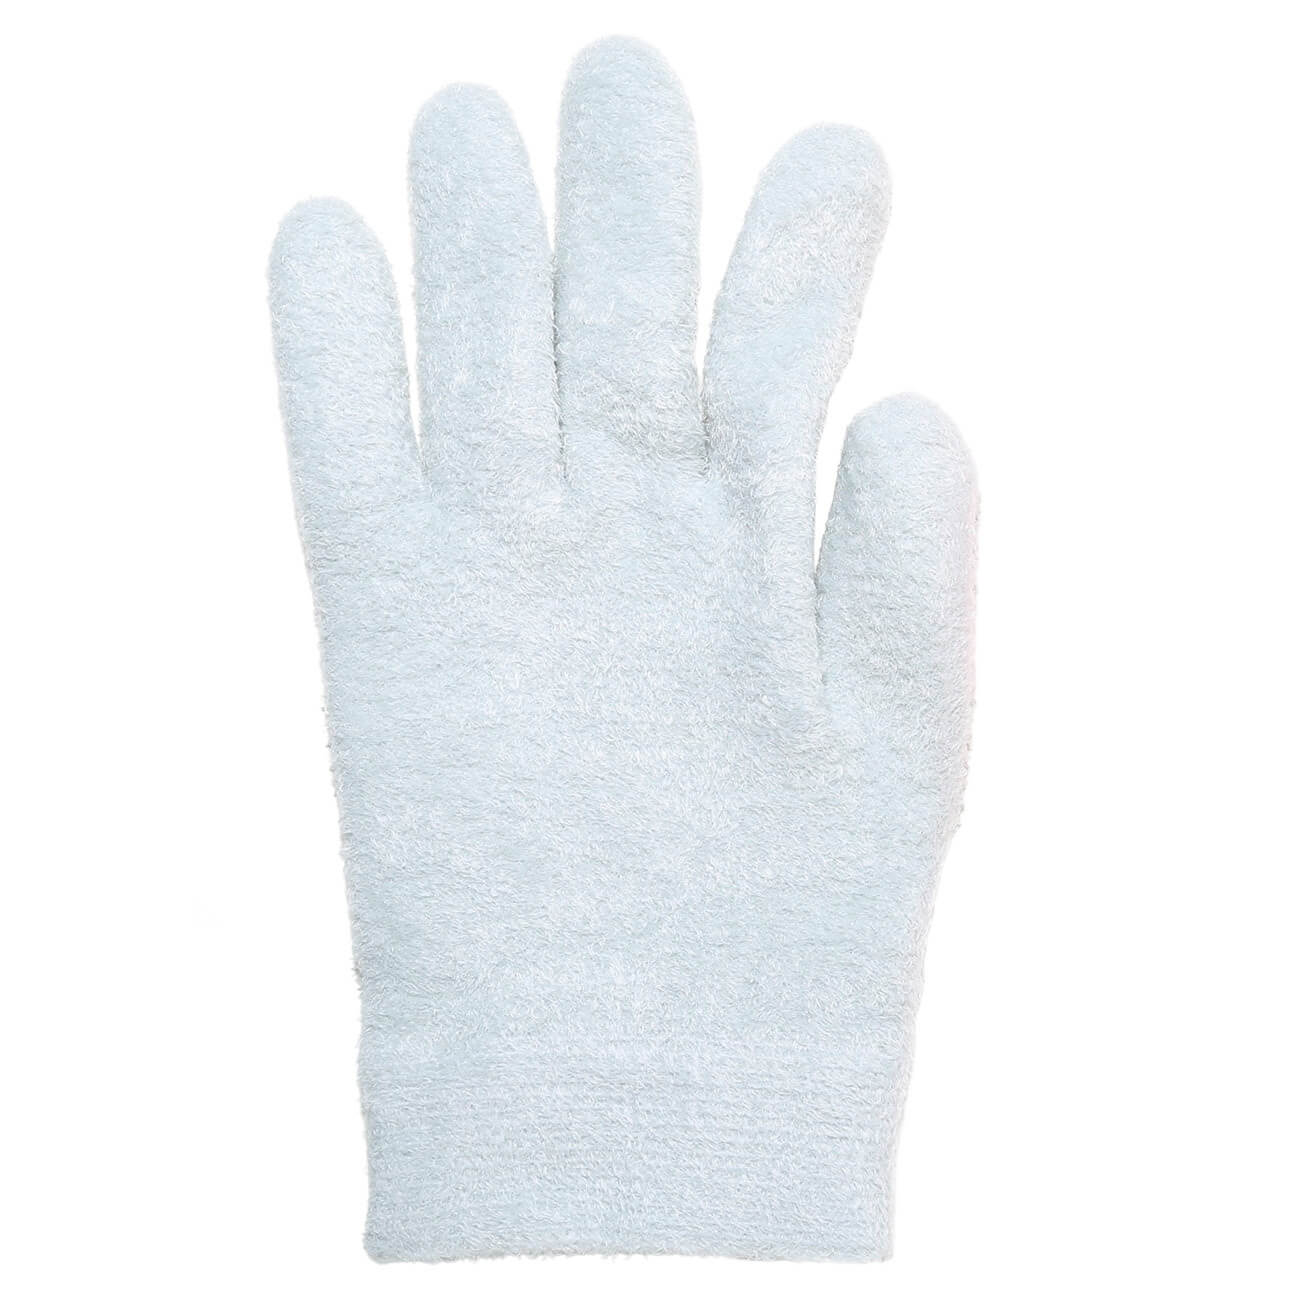 СПА-перчатки гелевые, 20 см, полиэстер, многоразовые, серые, Spa полустельки гелевые olvist